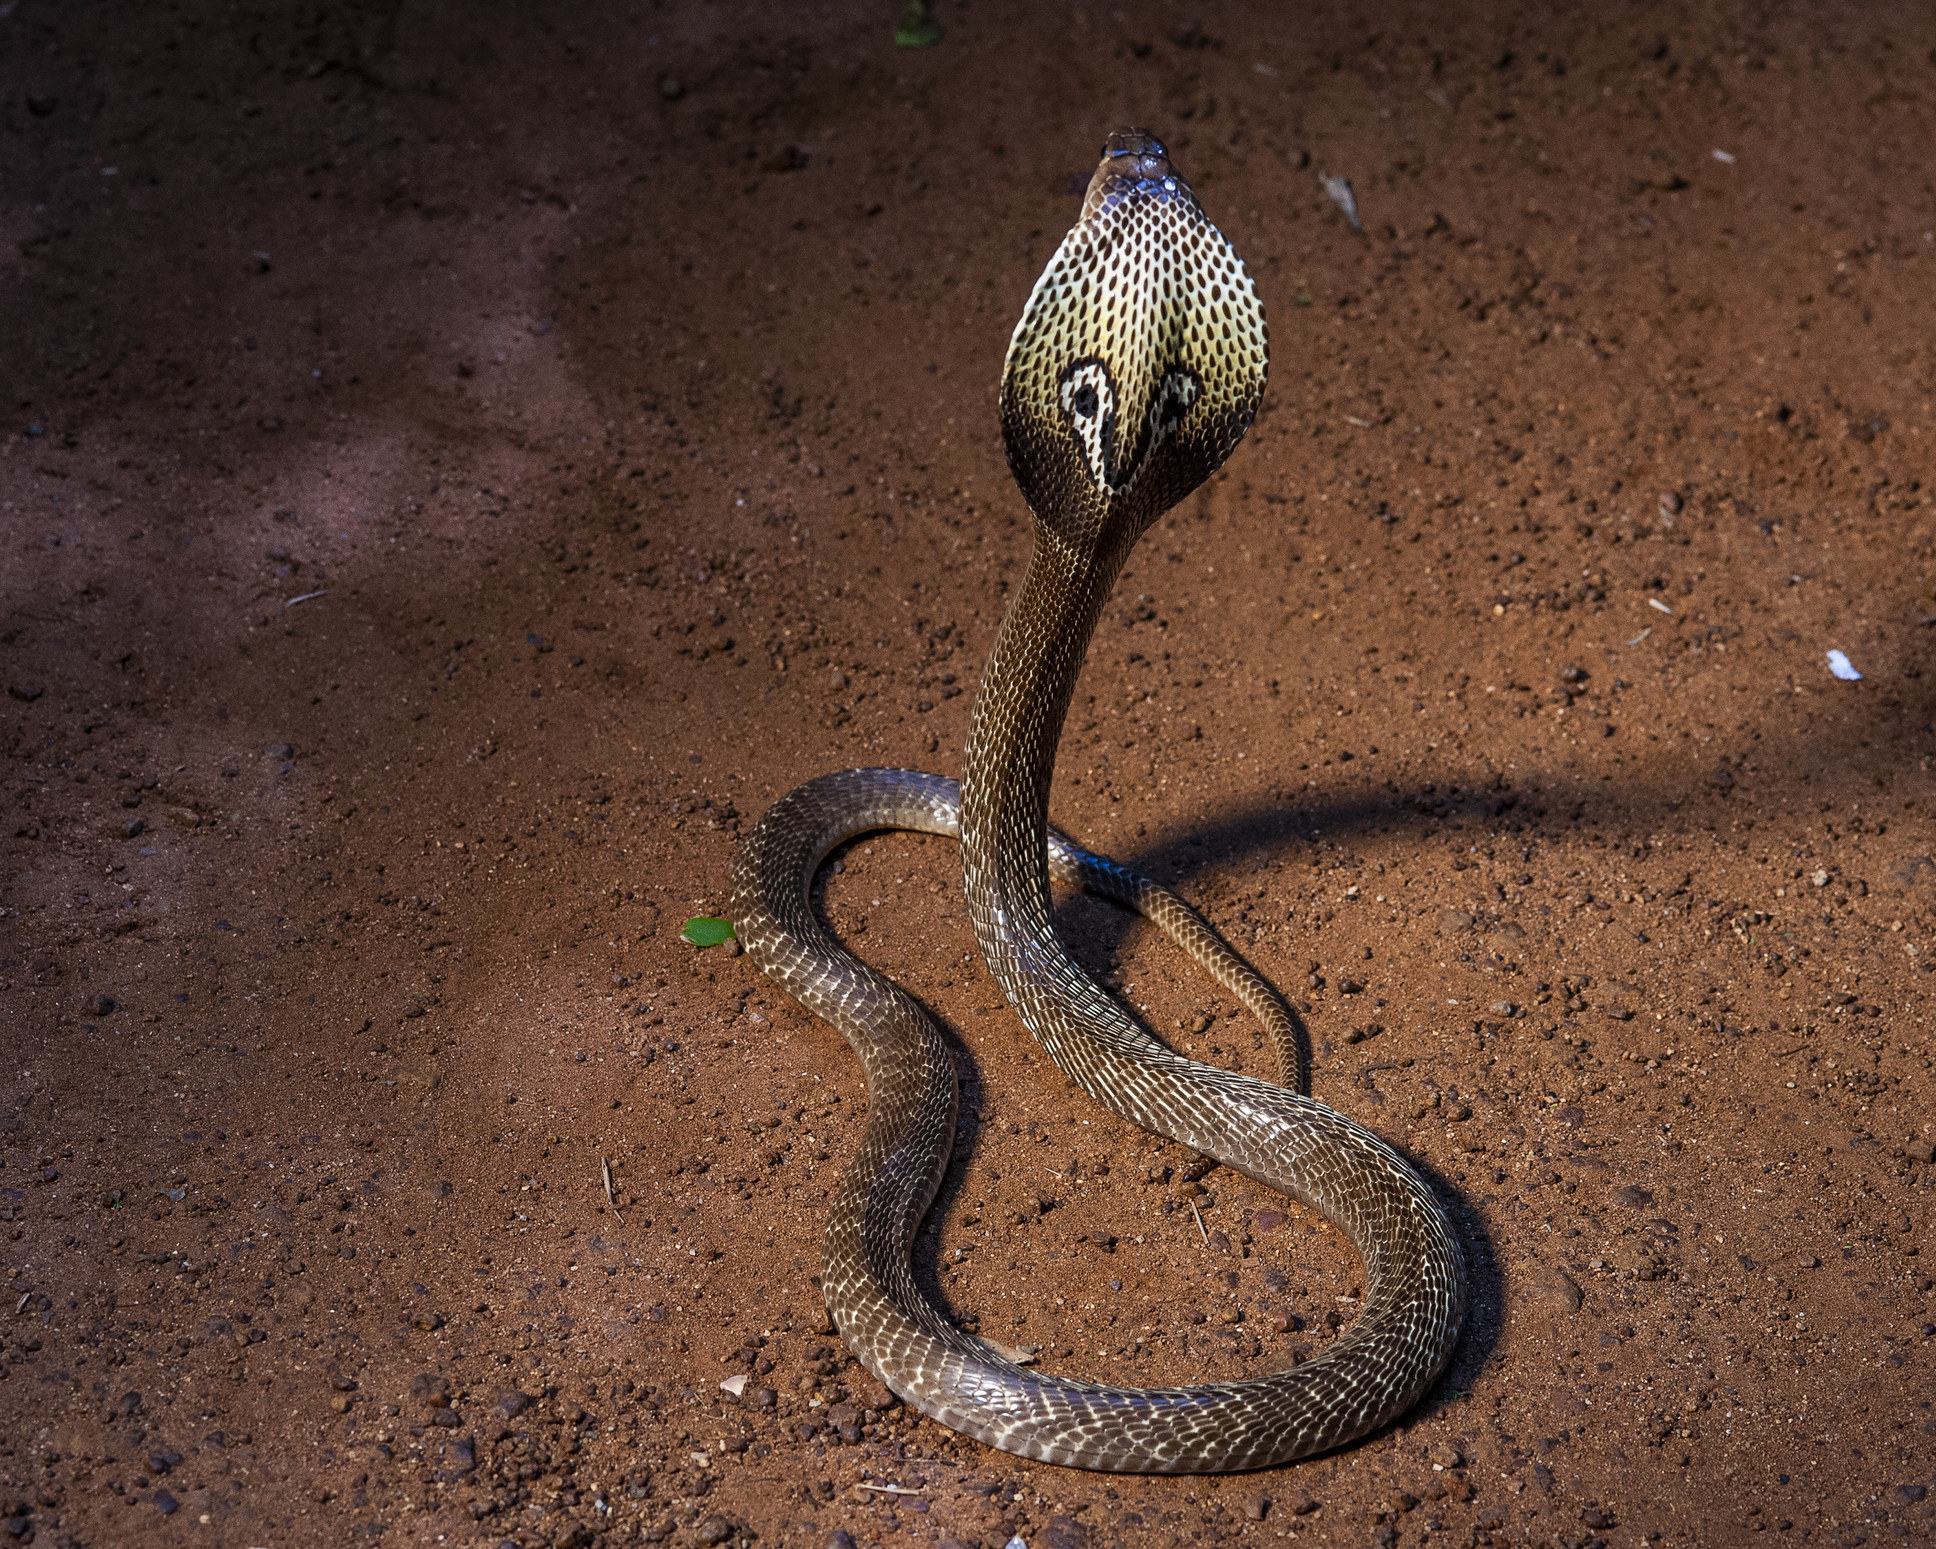 A cobra in a defensive pose